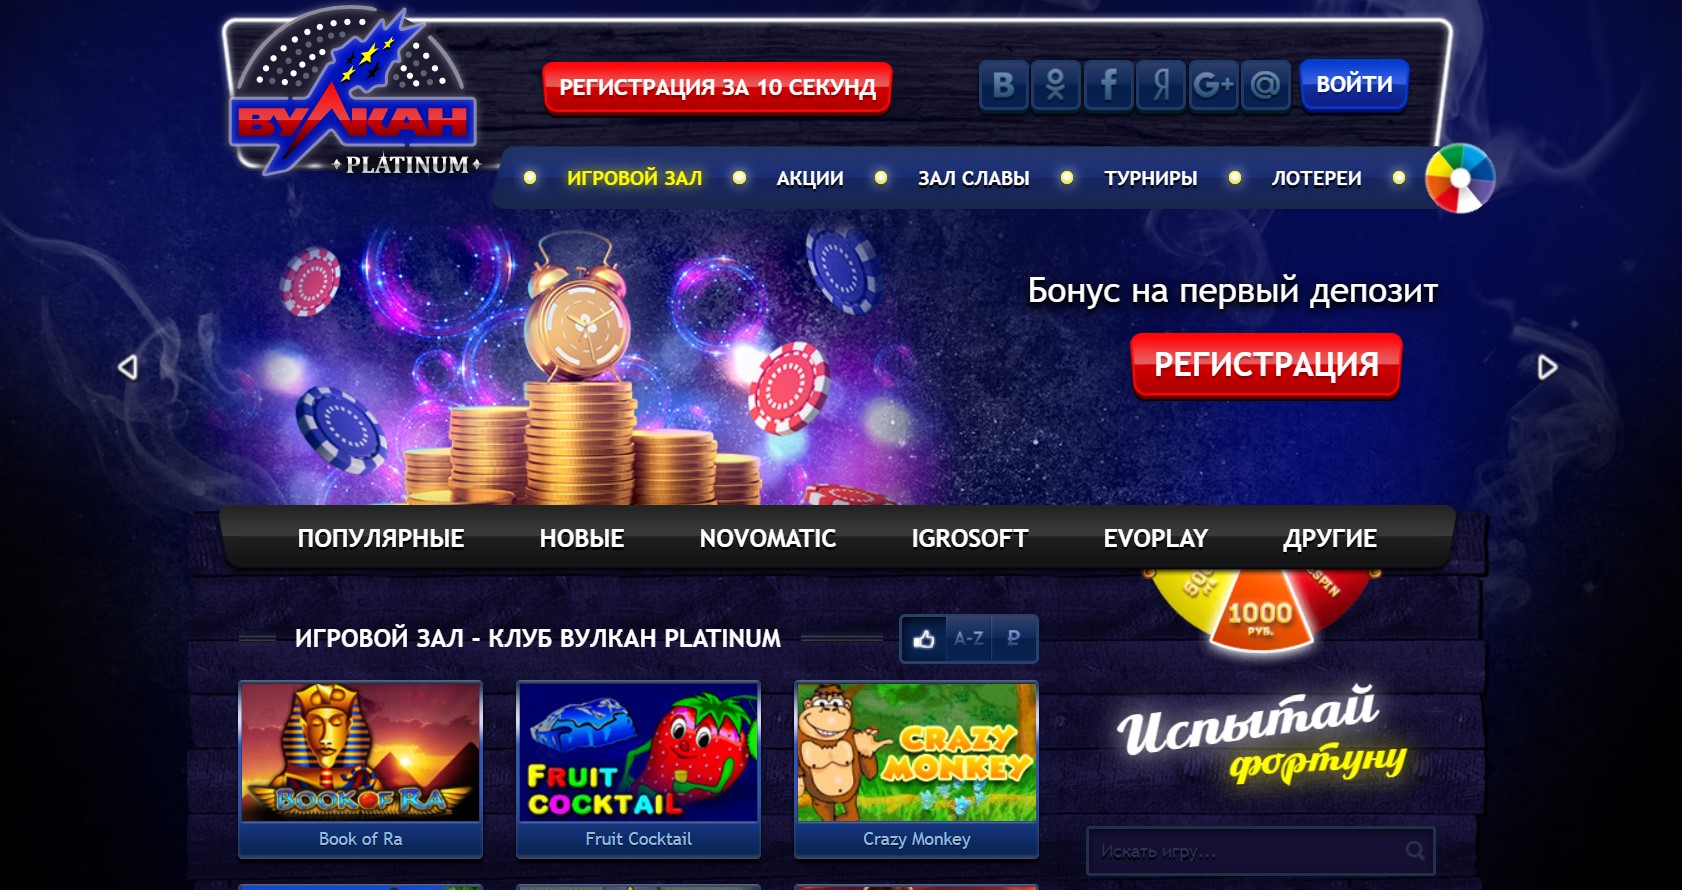 Вулкан platinum казино клуб джойказино регистрация joycasino games2 azurewebsites net